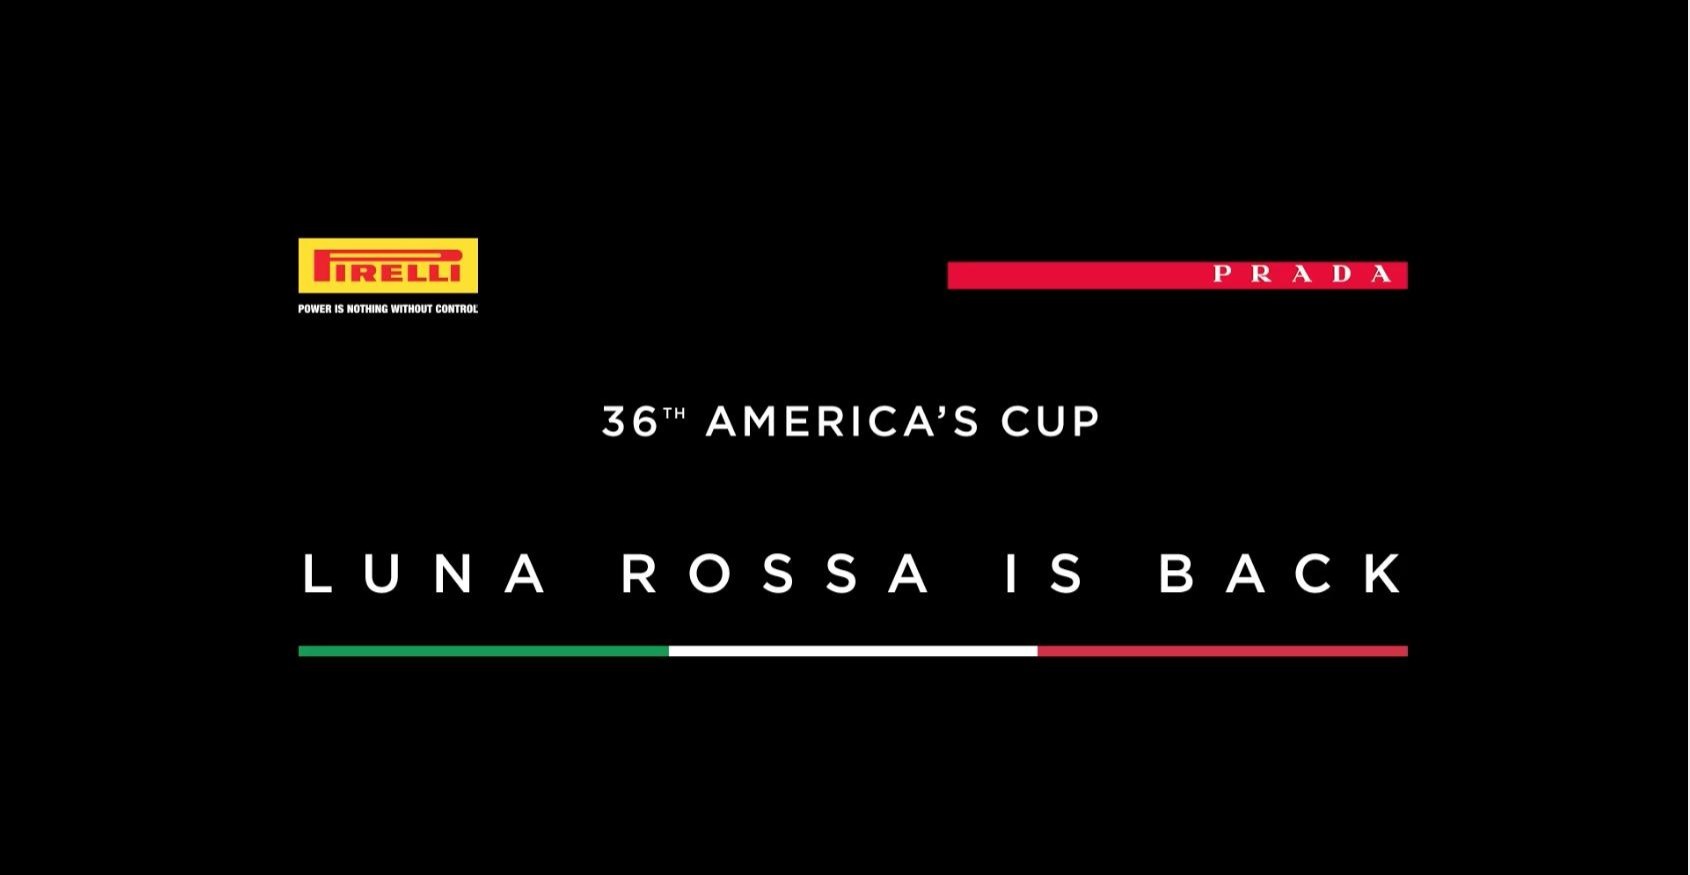 Pirelli e Prada insieme per la nuova sfida di Luna Rossa alla Coppa America